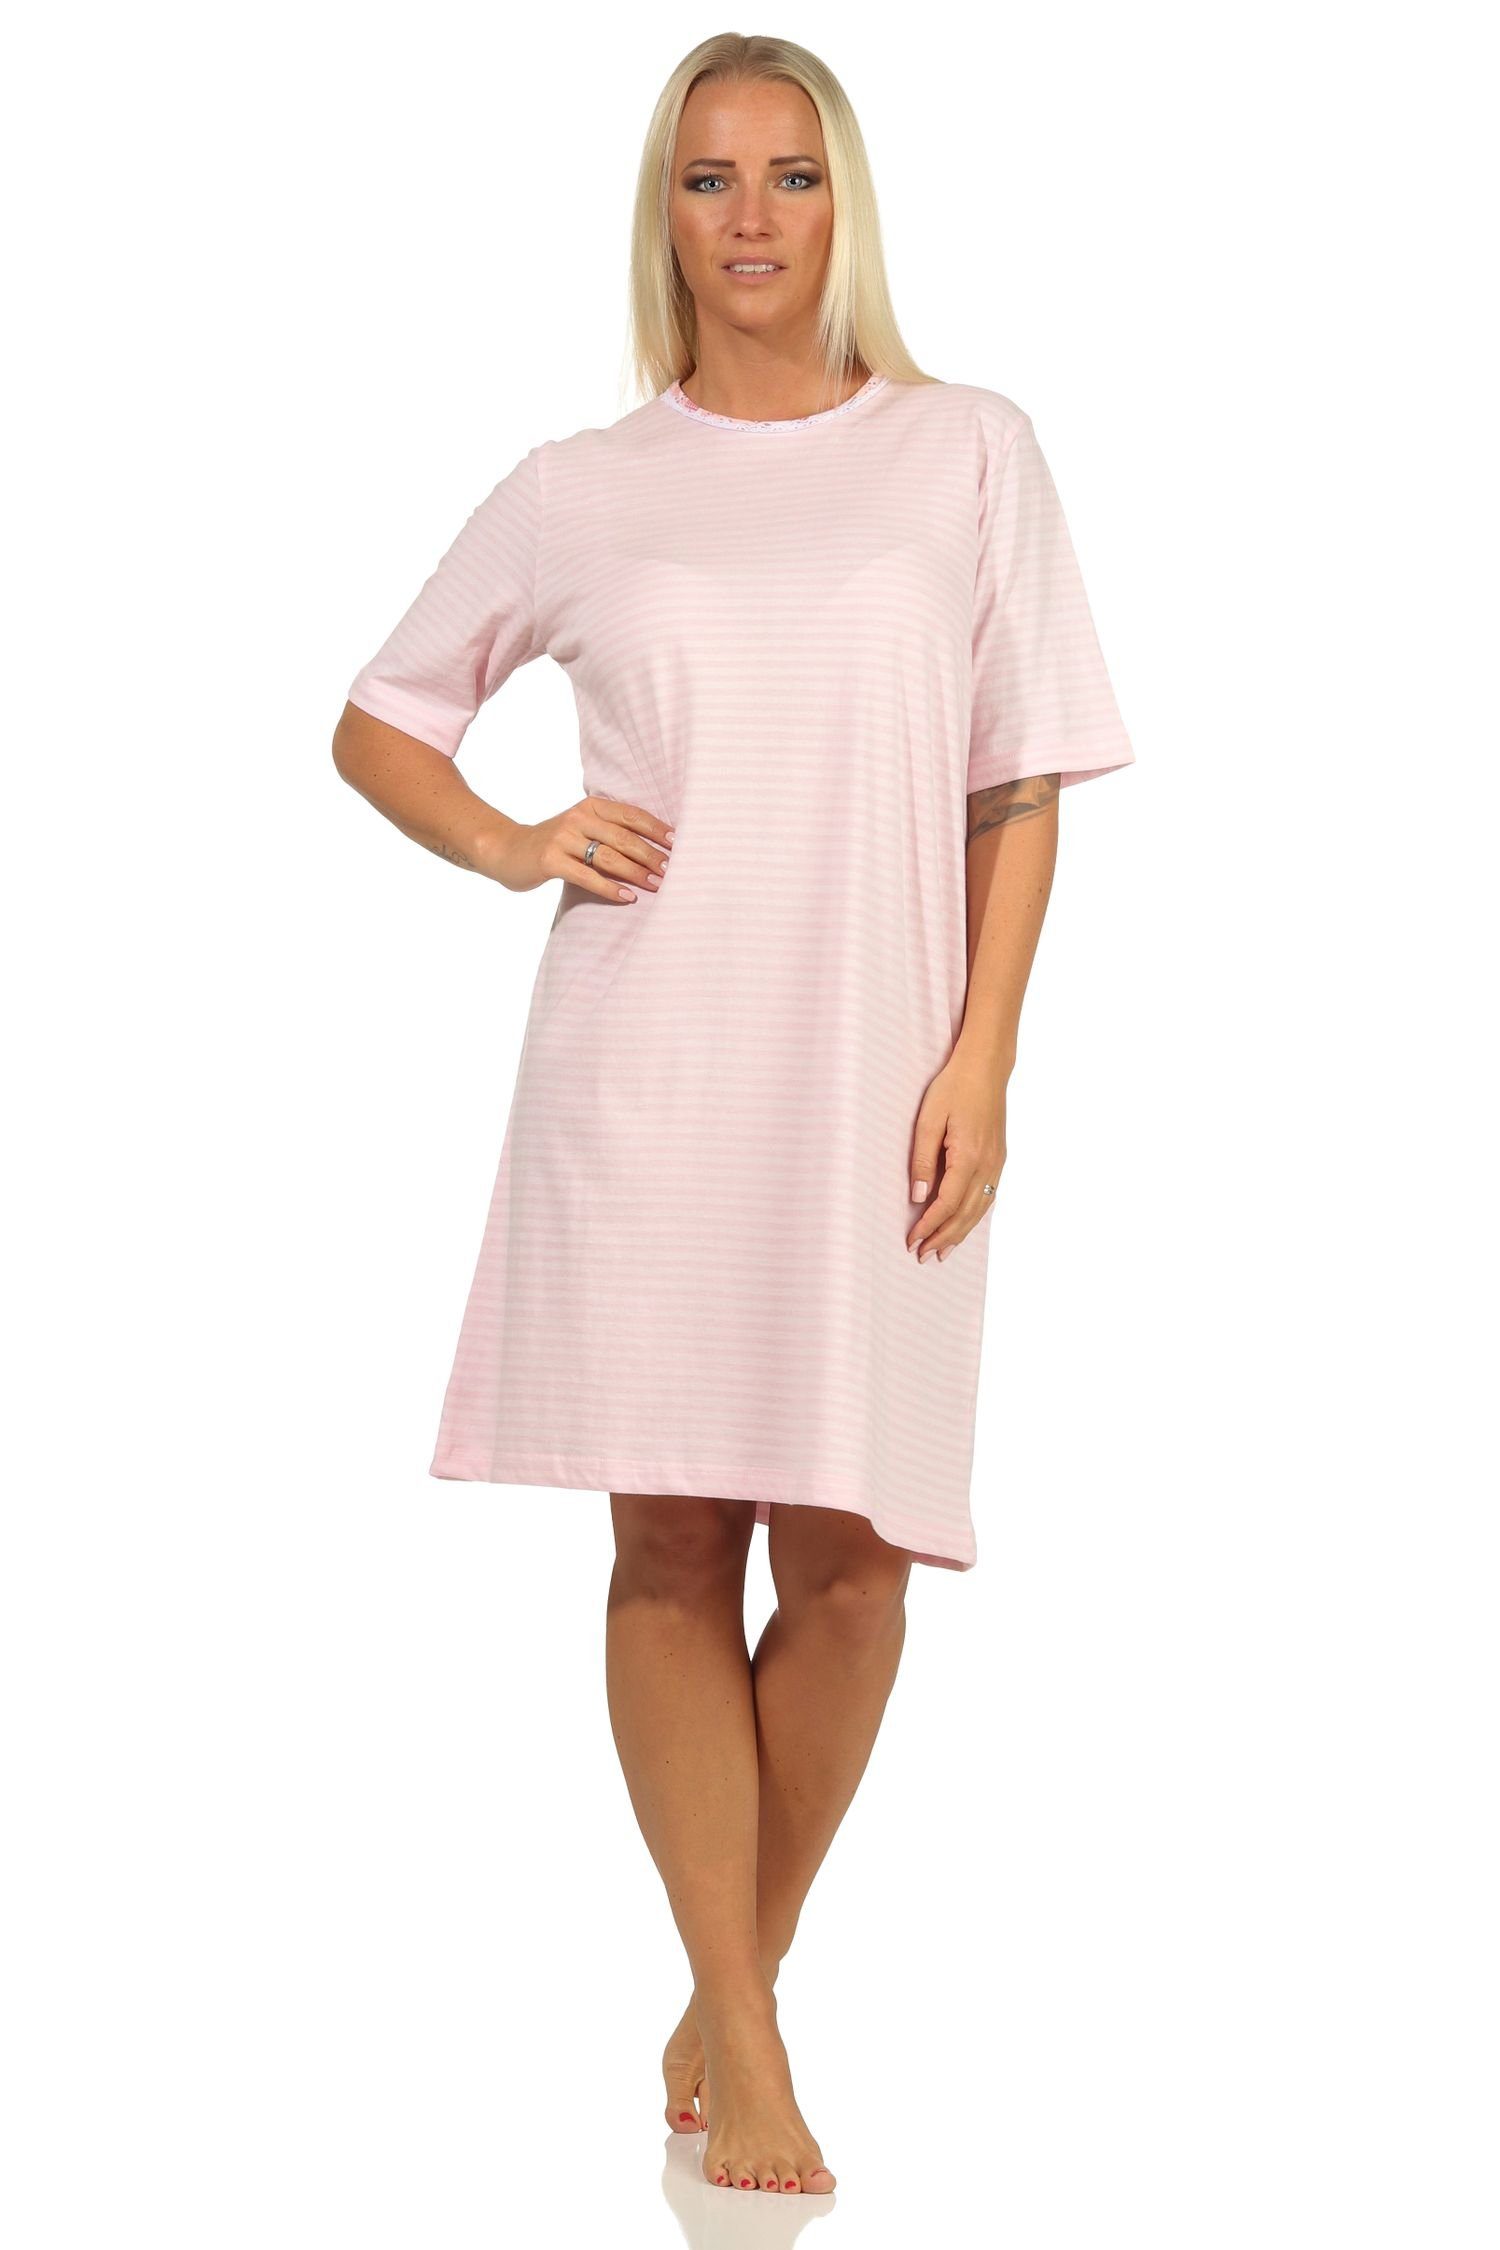 Normann Nachthemd Damen kurzarm Nachthemd mit Spitzenbesatz - auch in Übergrößen rosa